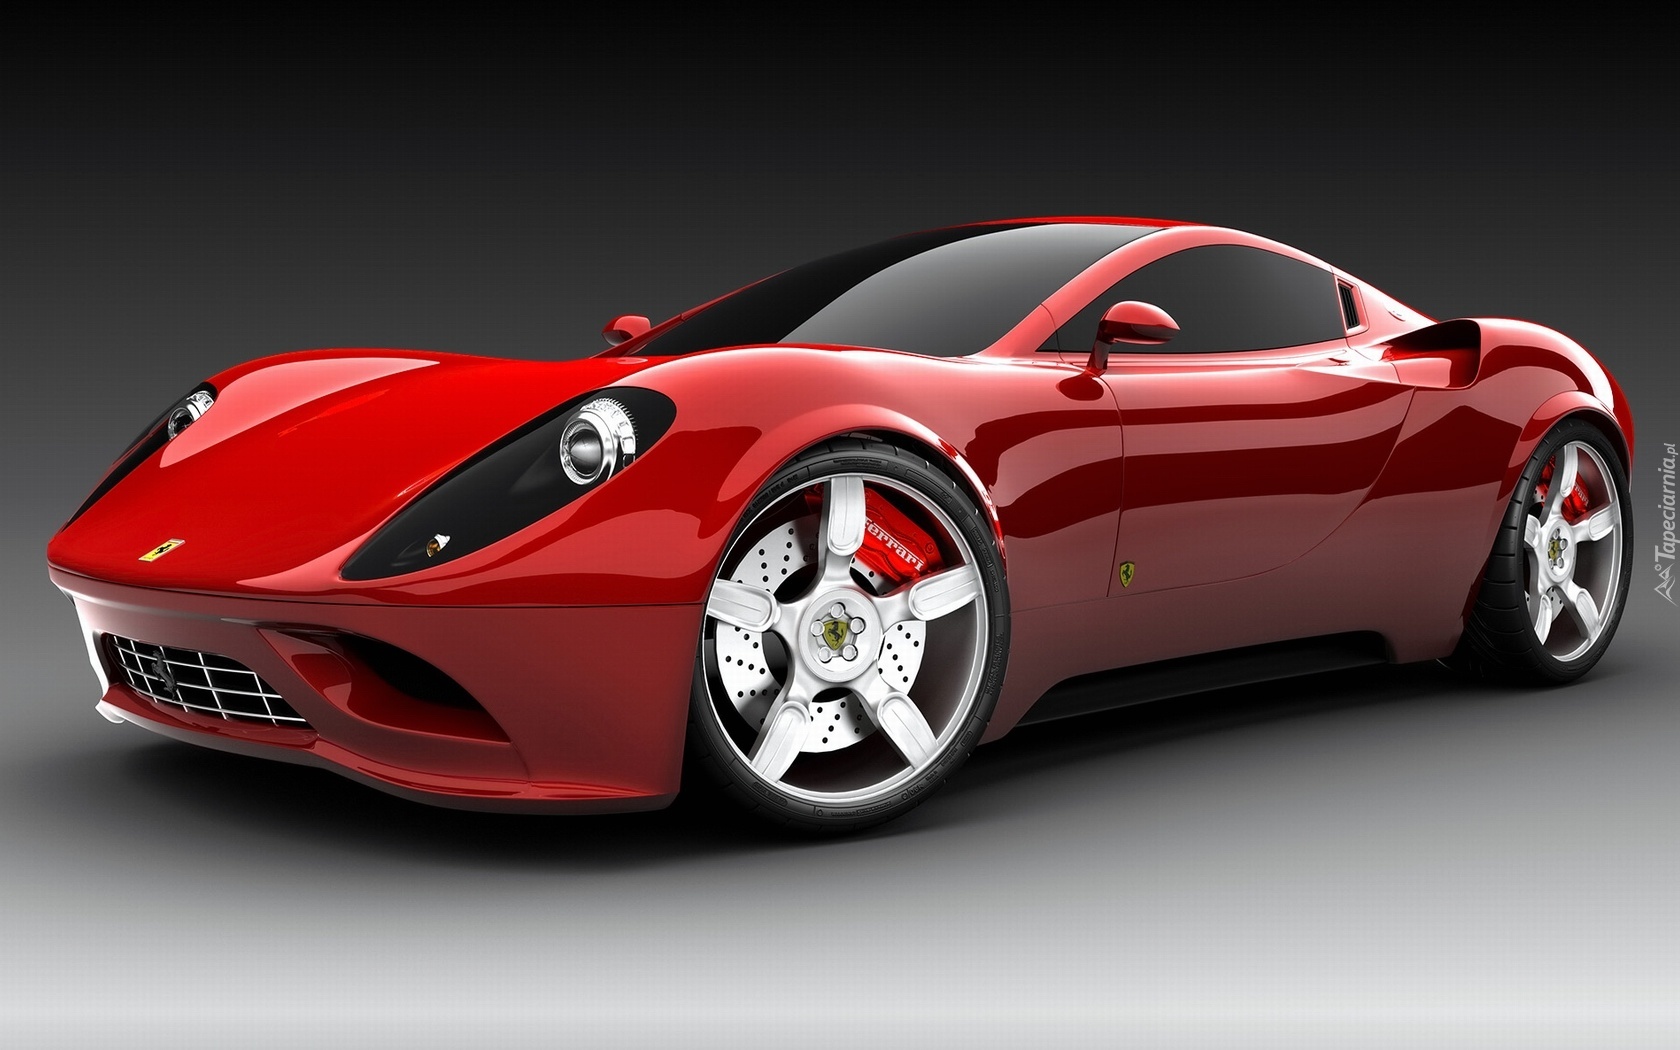 Czerwone, Ferrari